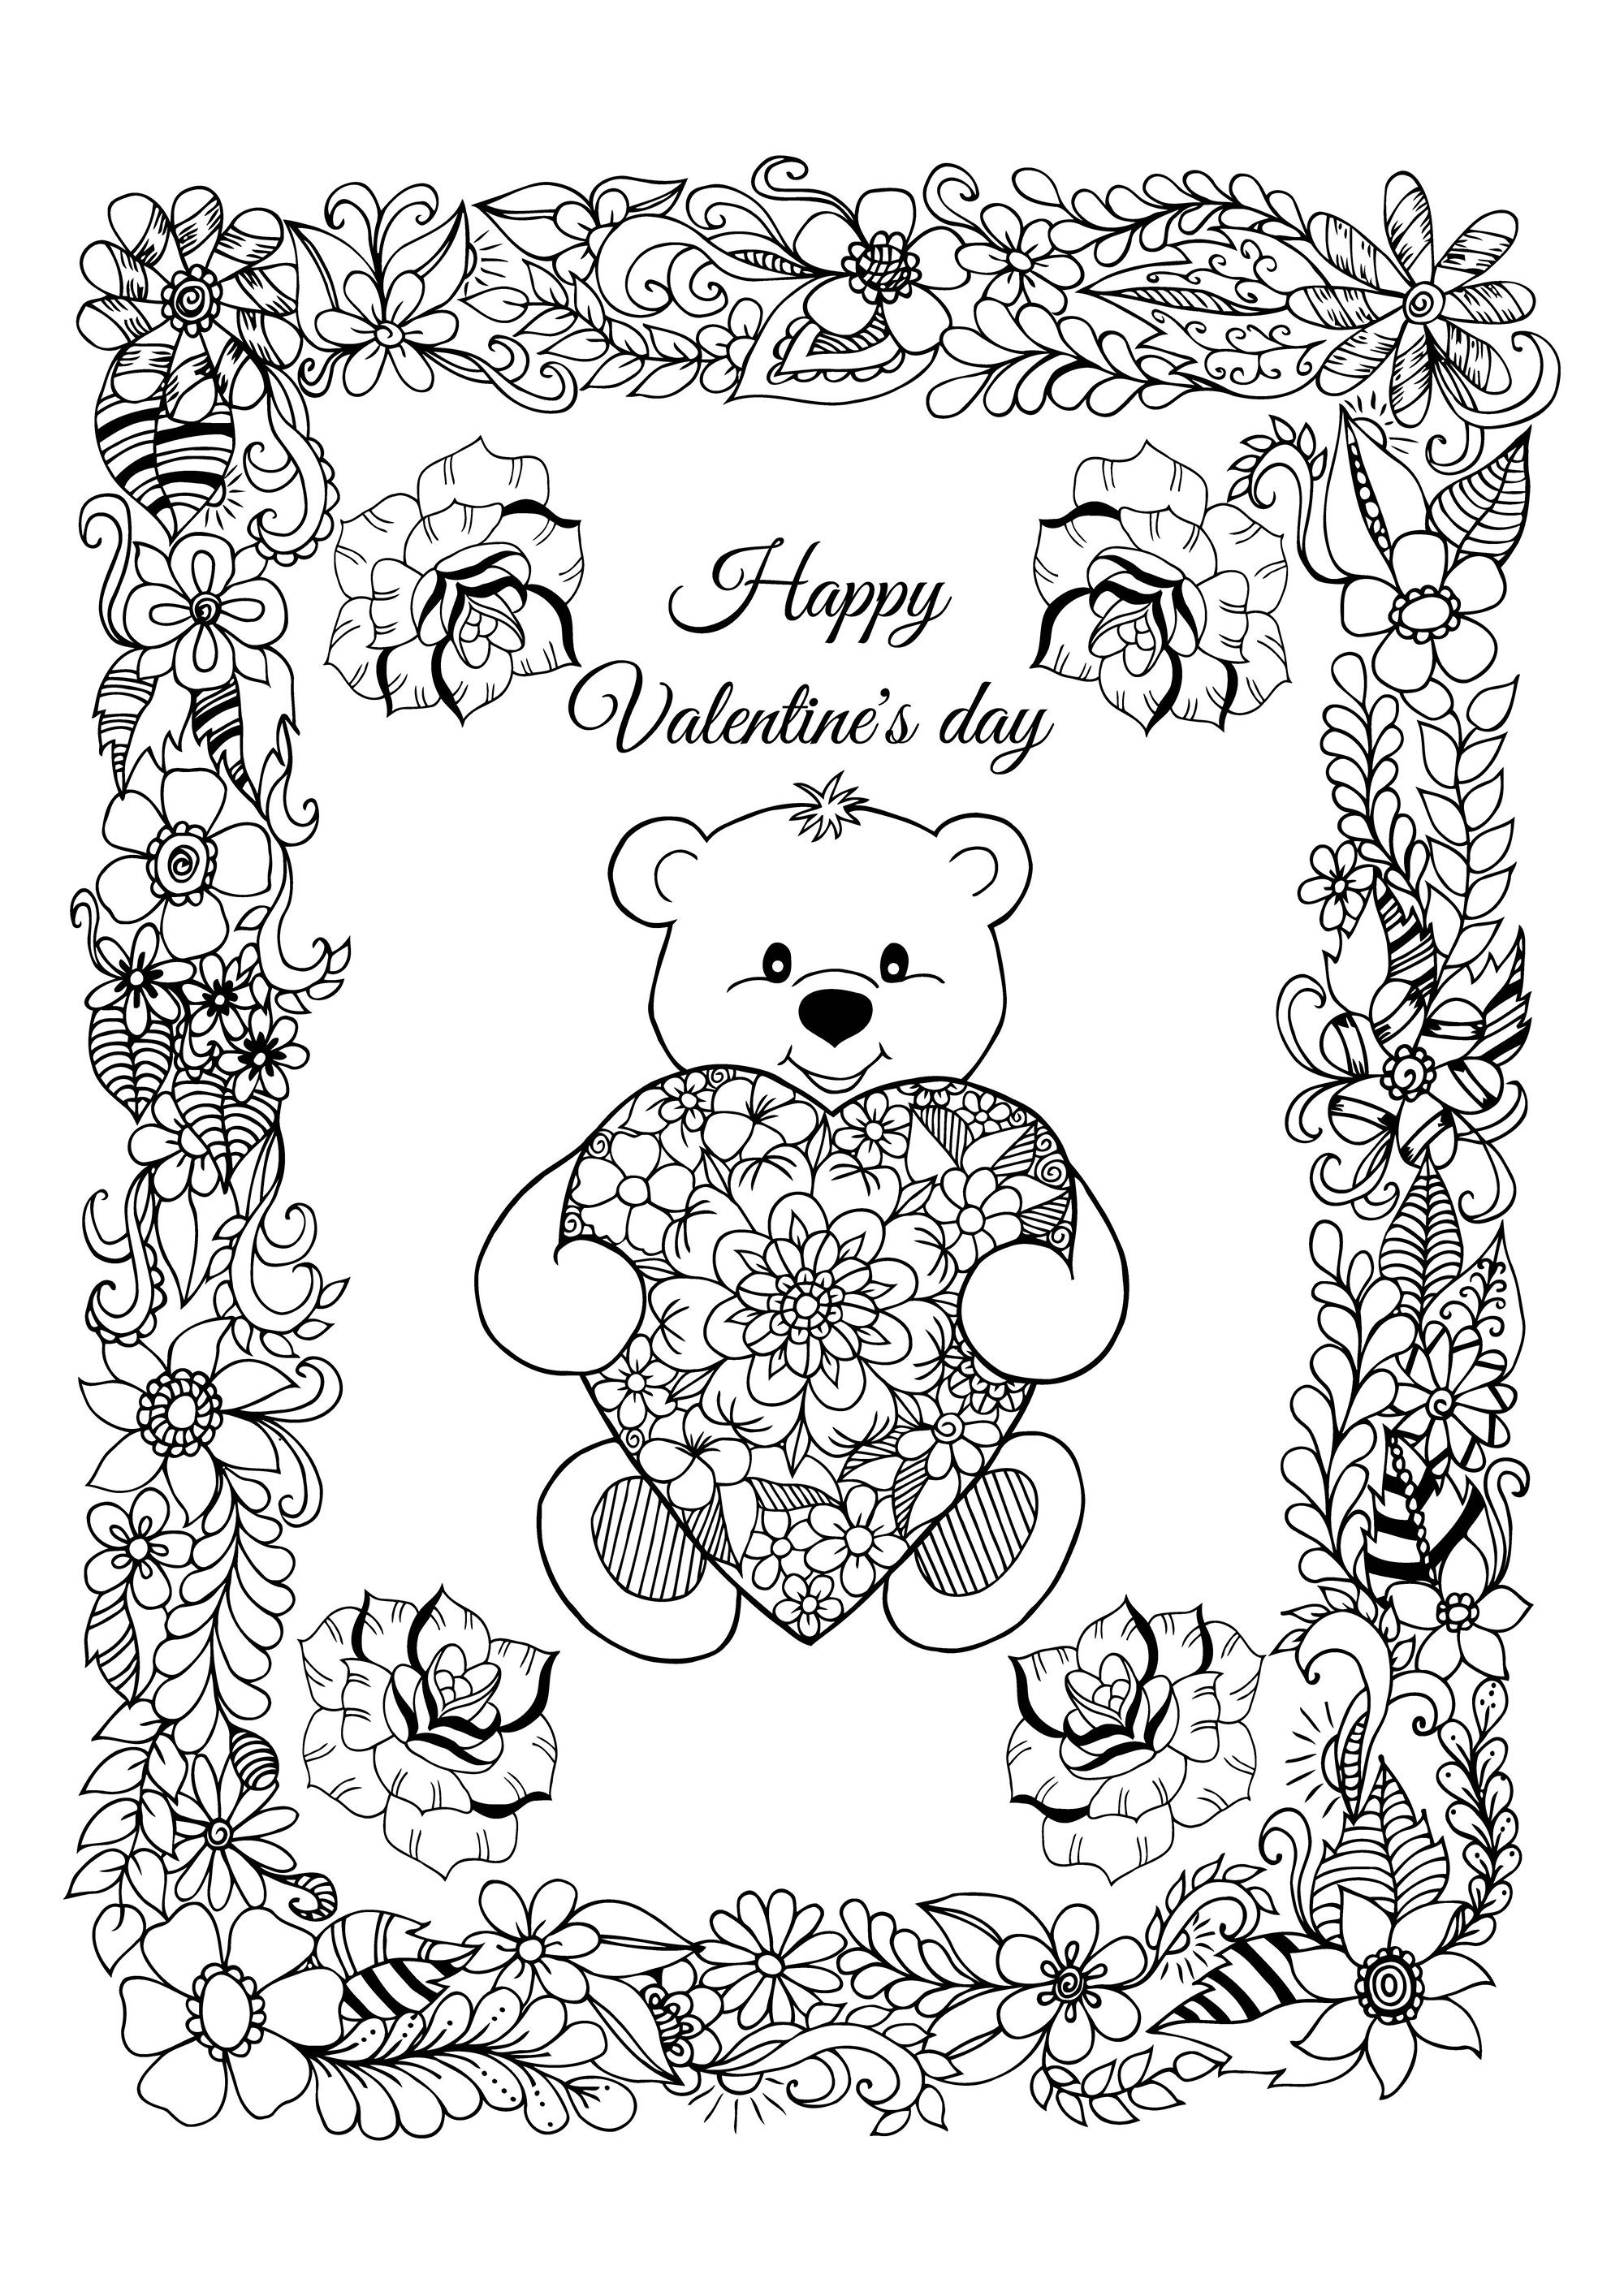 Bonita tarjeta de San Valentín para colorear, con un simpático osito que lleva un corazón con bonitos dibujos, y un bonito marco lleno de flores, Artista : Maritel67   Origen : 123rf